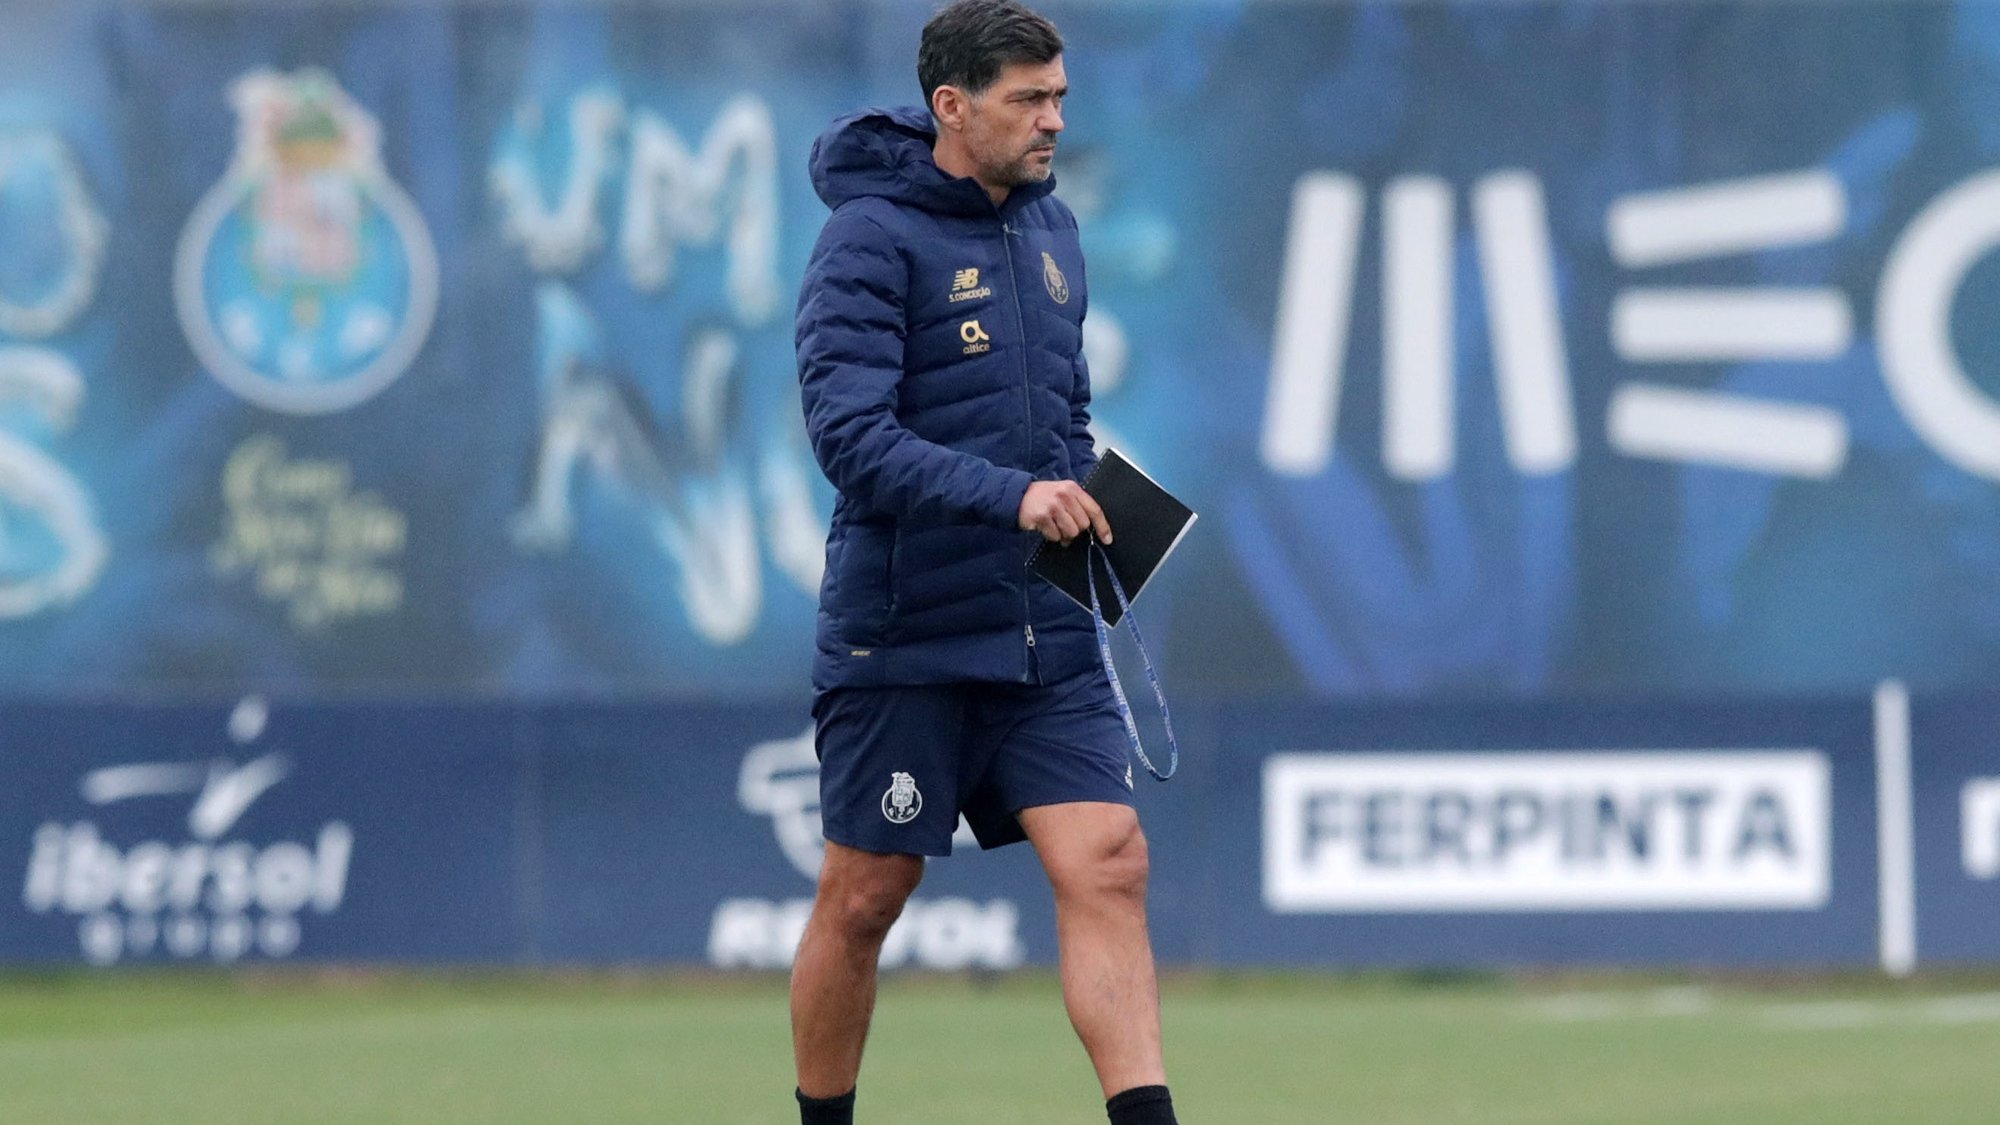 Treinador do FC Porto, Sérgio Conceição